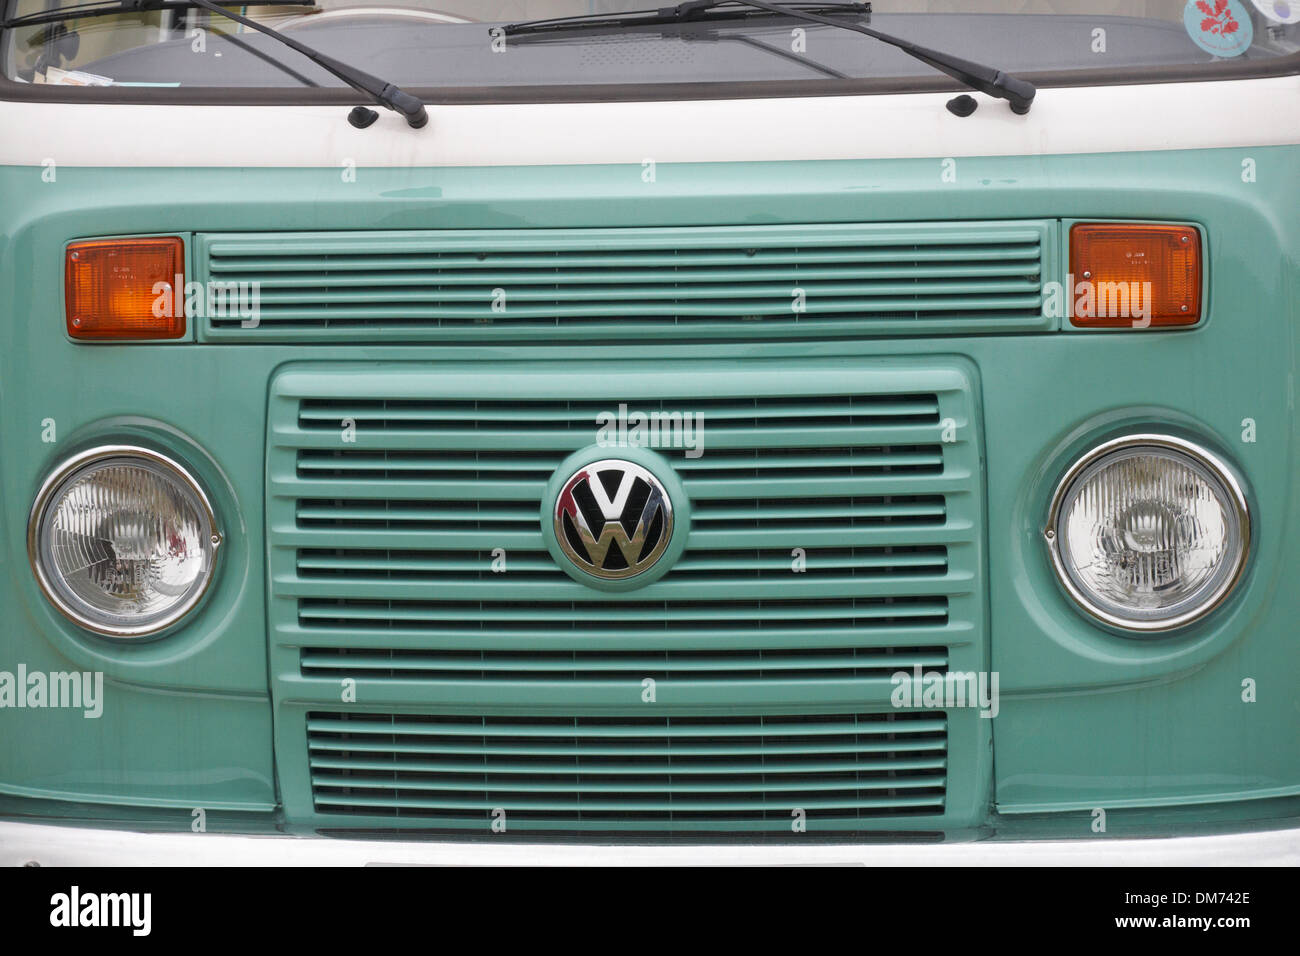 Frontgrill des Volkswagen Wohnwagens mit VW-Abzeichen und -Leuchten,  Scheinwerfer und Blinkleuchten - VW-Logo Wohnmobil im Dorset UK  Stockfotografie - Alamy